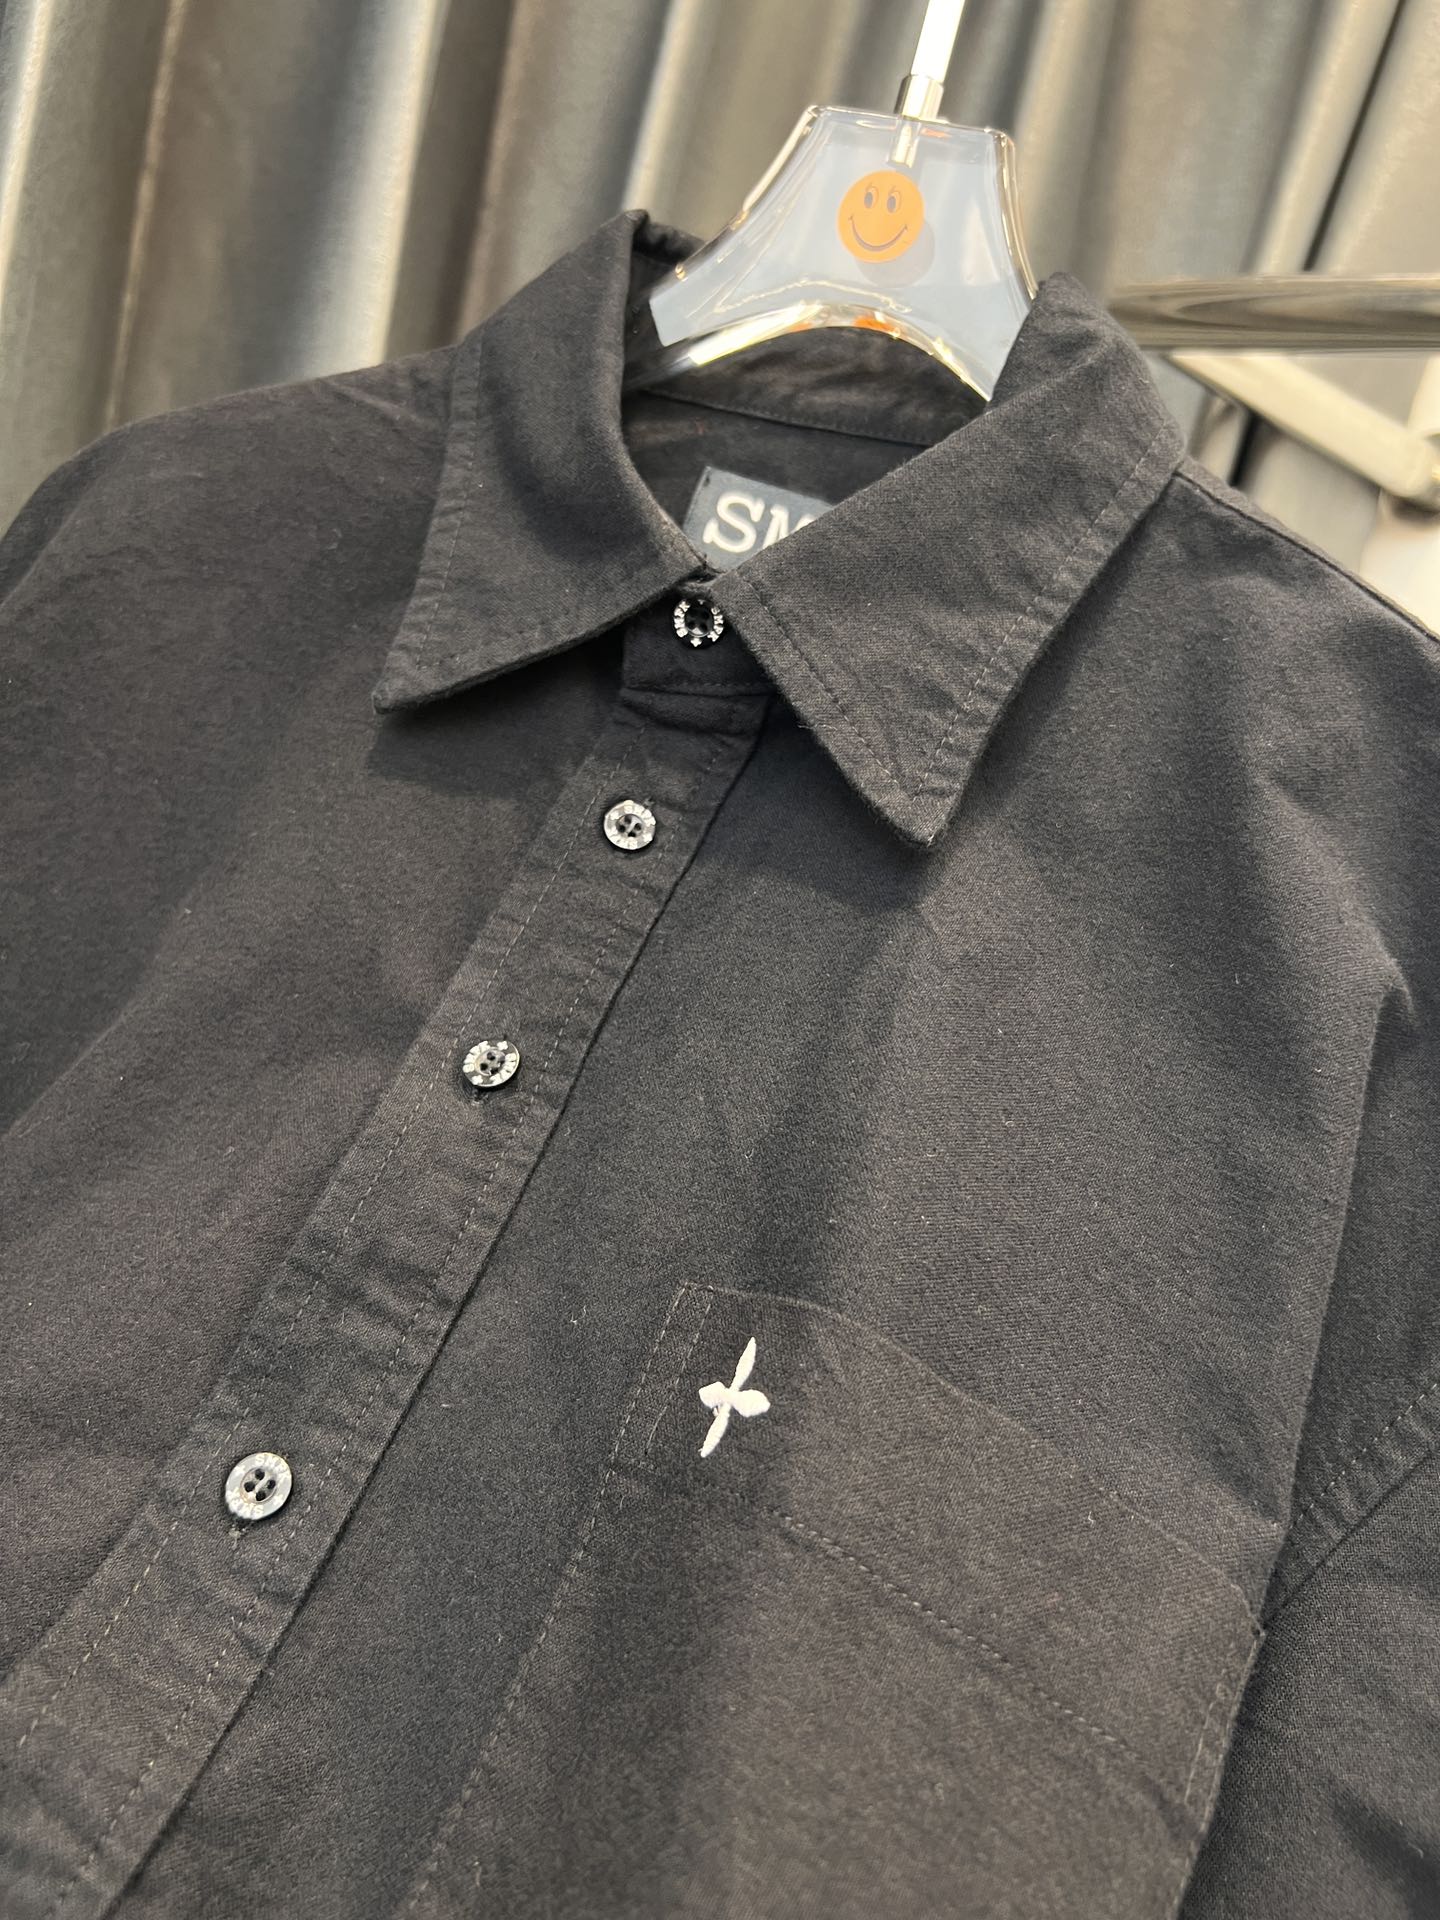 SMFKシャツ 洗い方スーパーコピー 人気 ファッション ビジネス カジュアル 刺繡シャツ ブラック_7